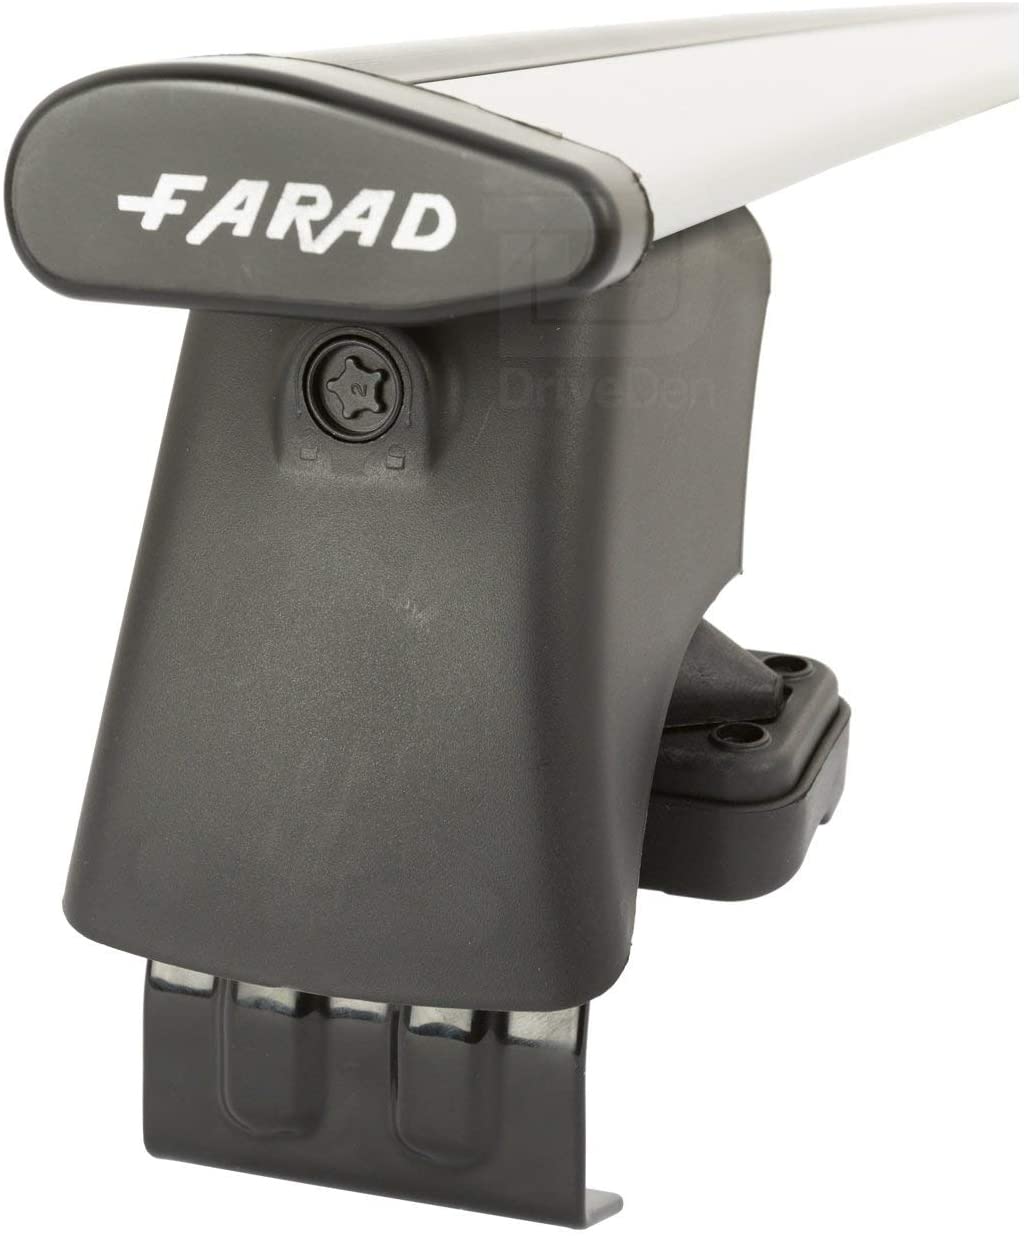 FARAD-Kit H2 per barre portatutto - Nissan Micra 2003-2010 (senza corrimano)